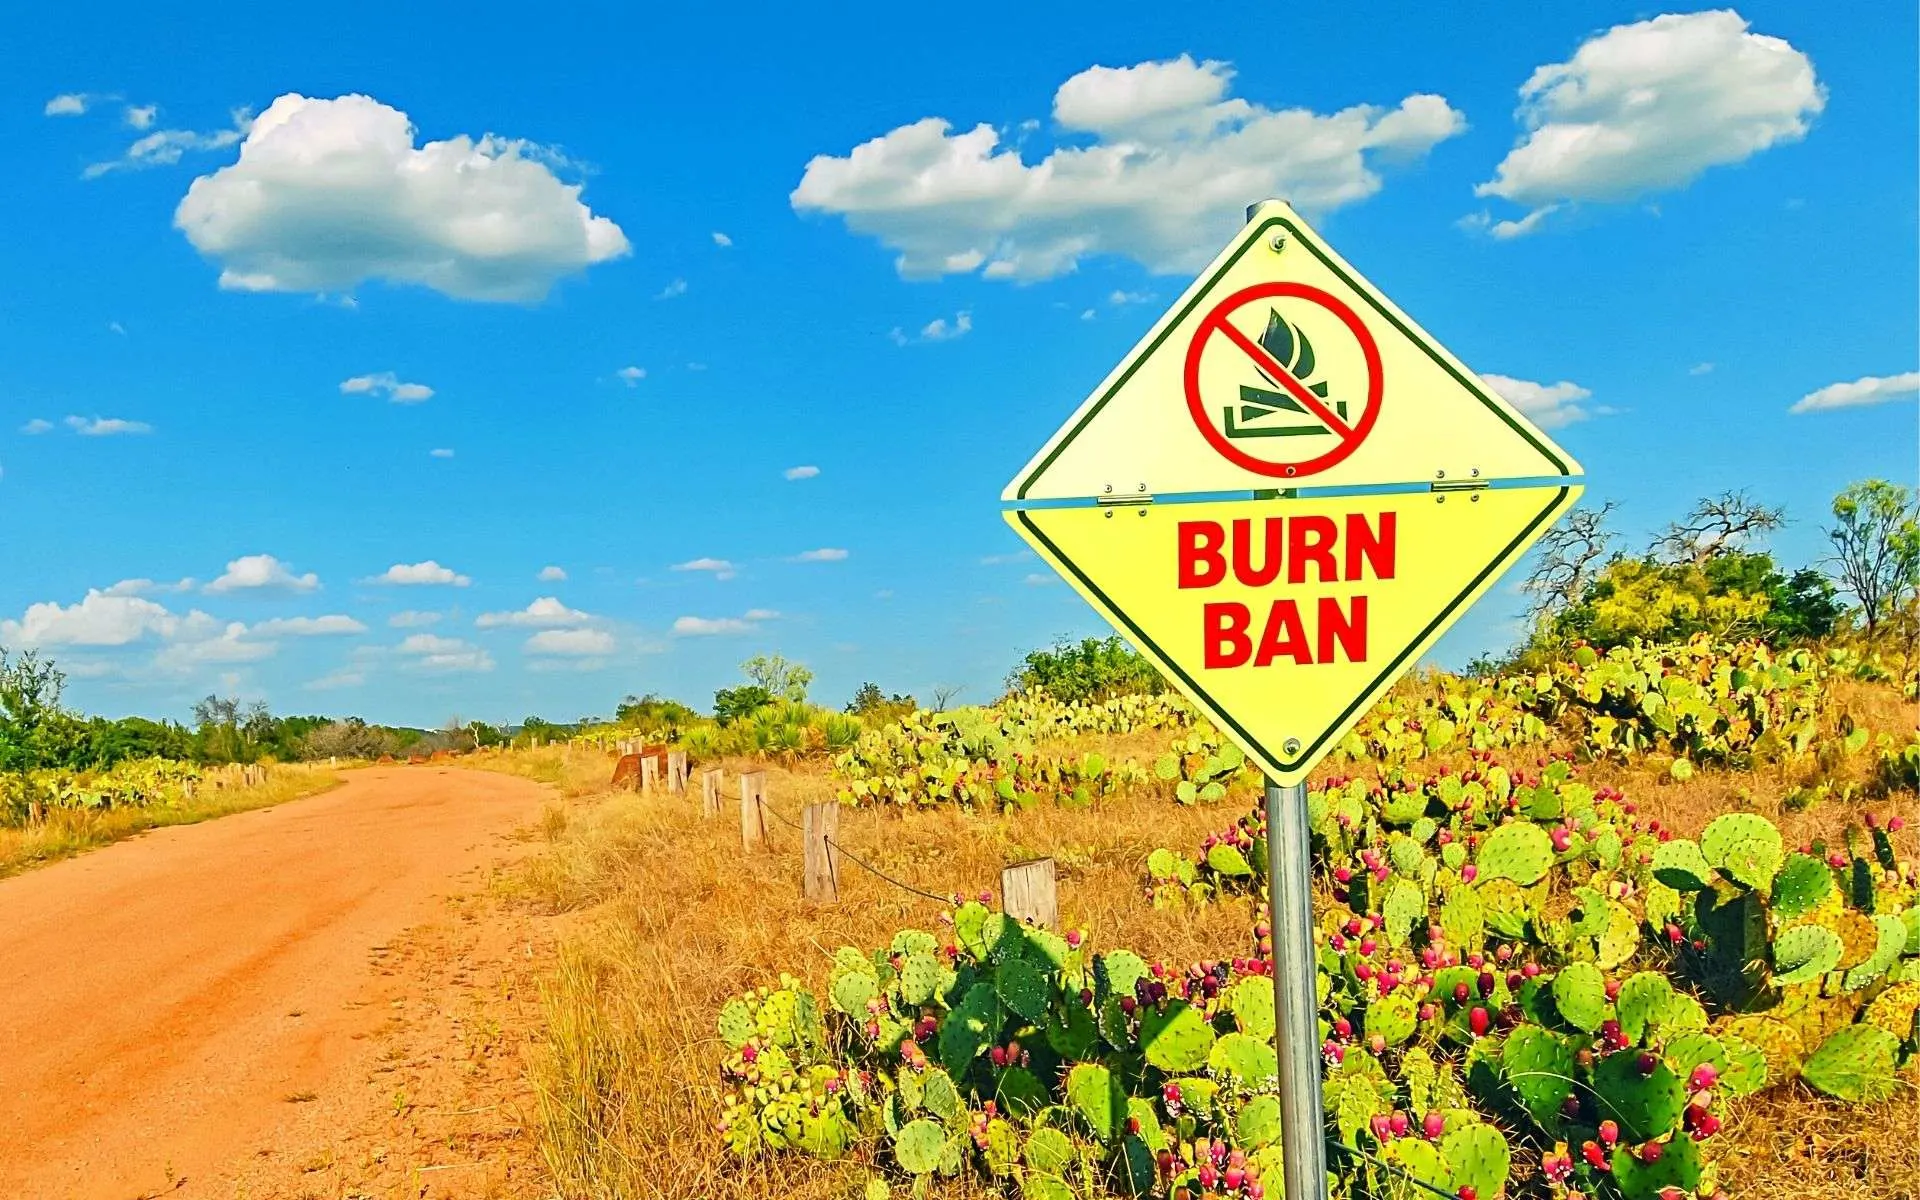 burn ban sign beside dirt road